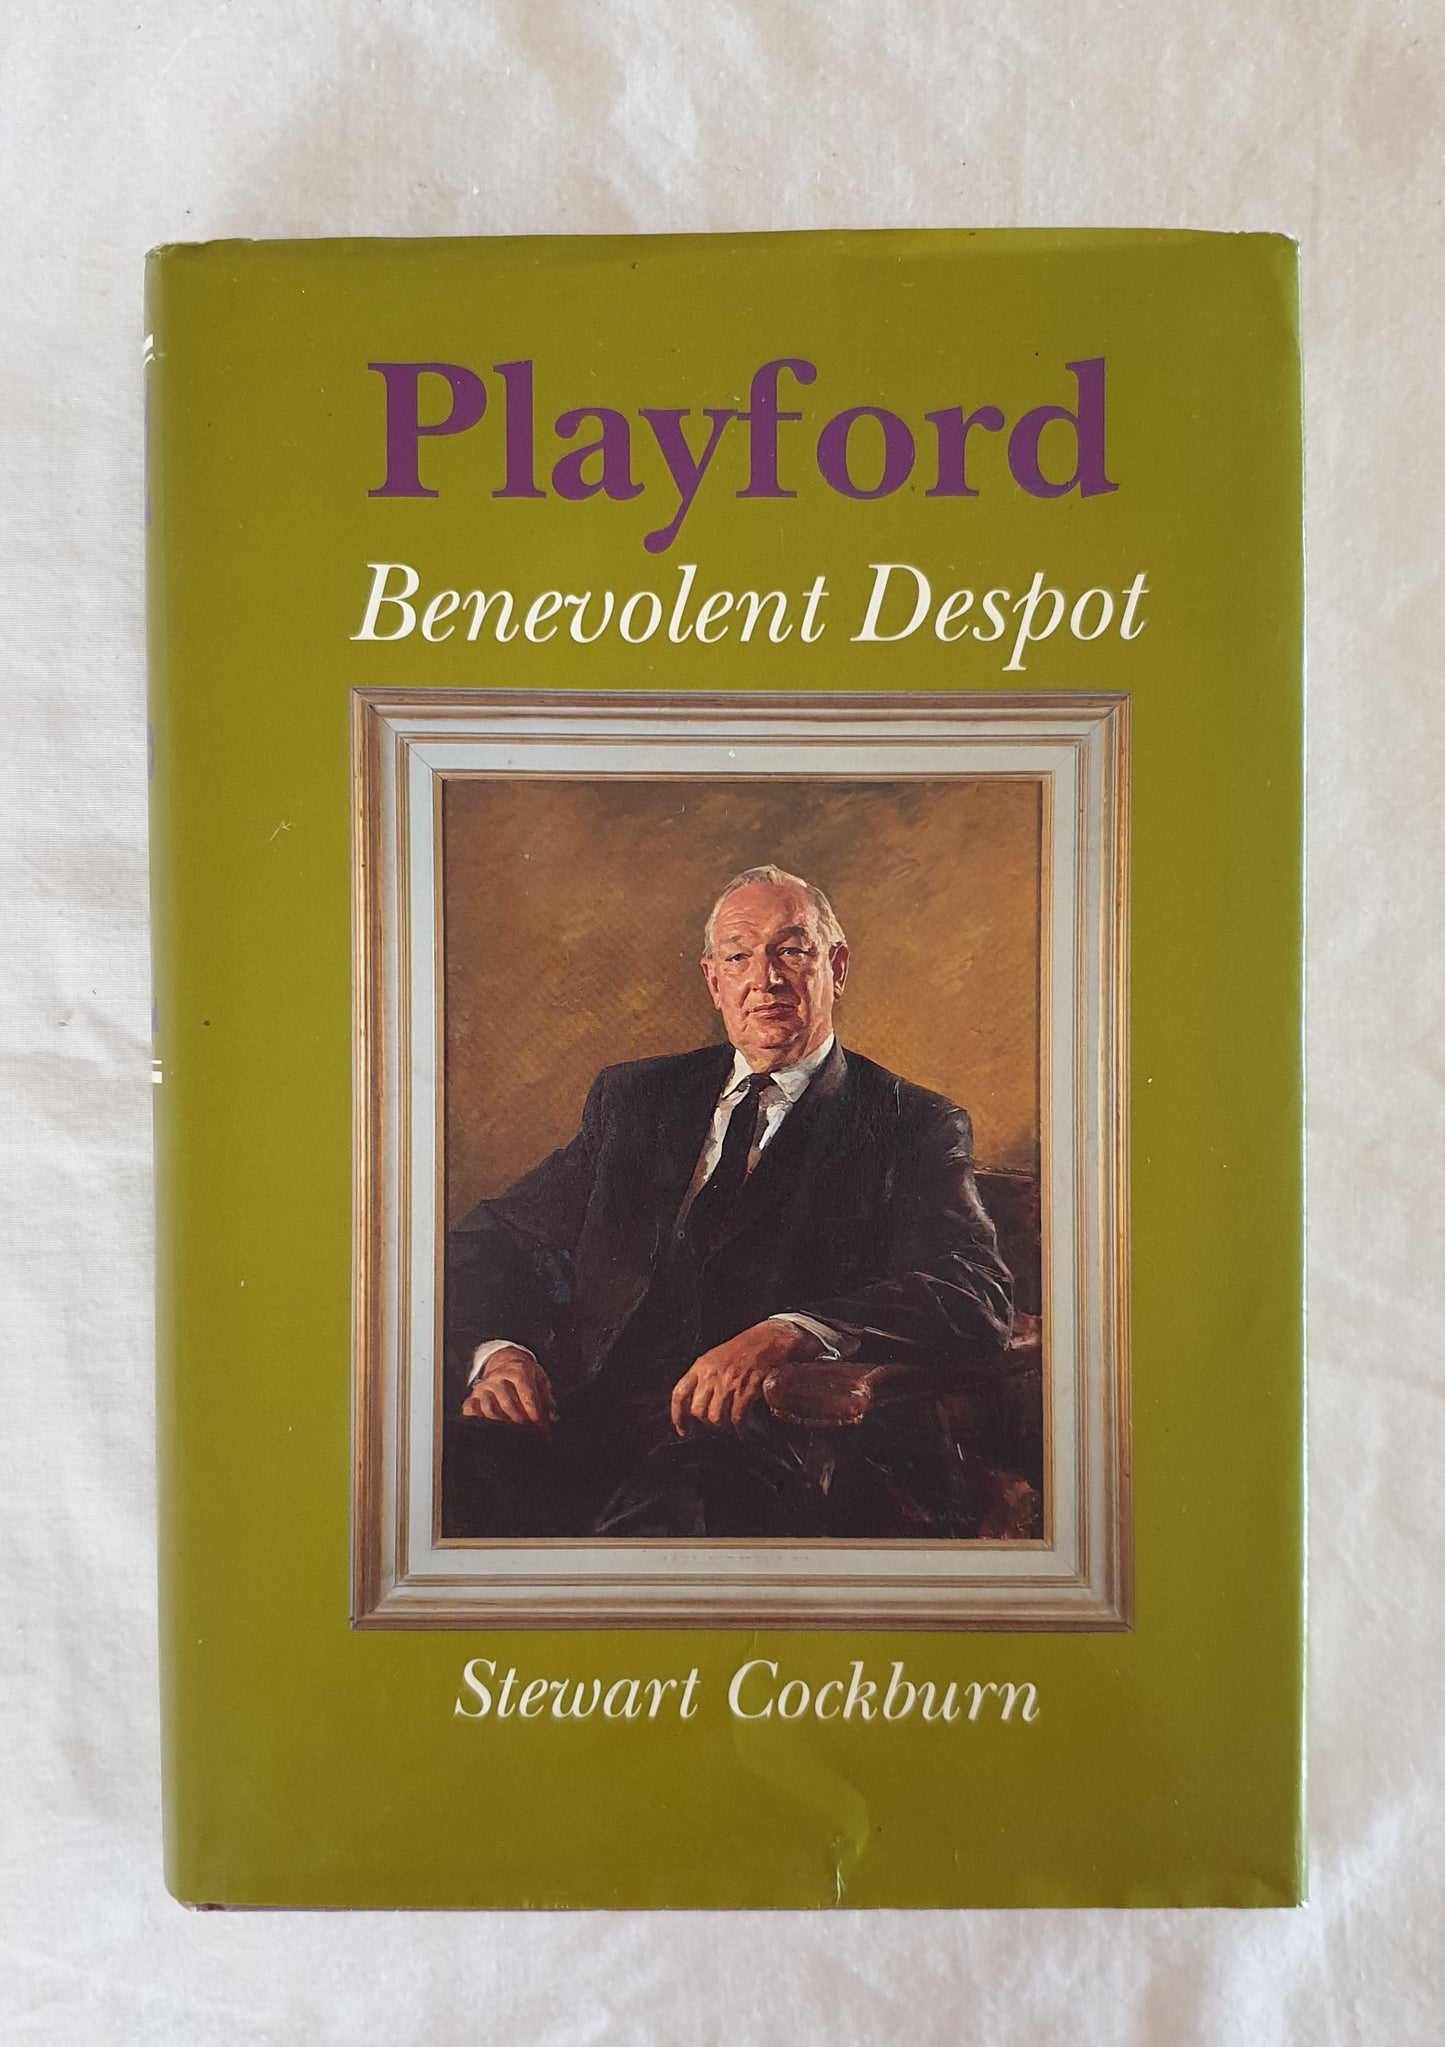 Playford Benevolent Despot by Stewart Cockburn